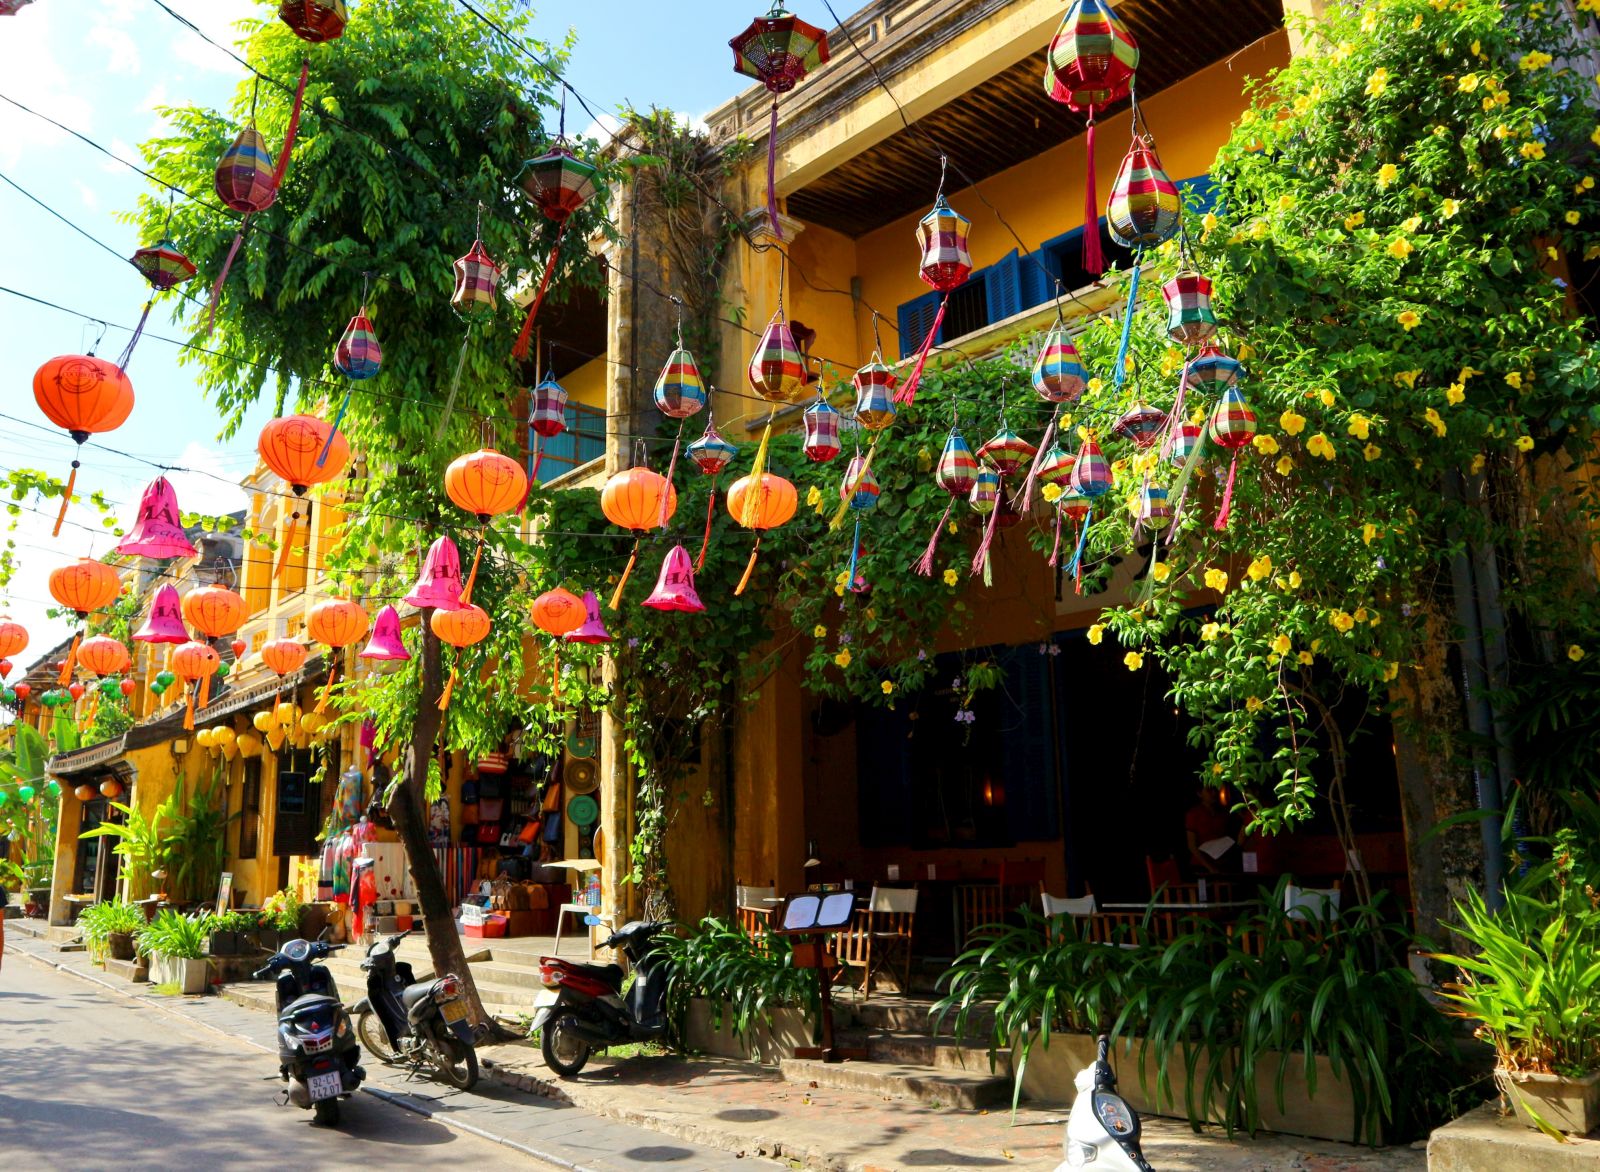 Street scene with lanterns in Hoi An Vietnam